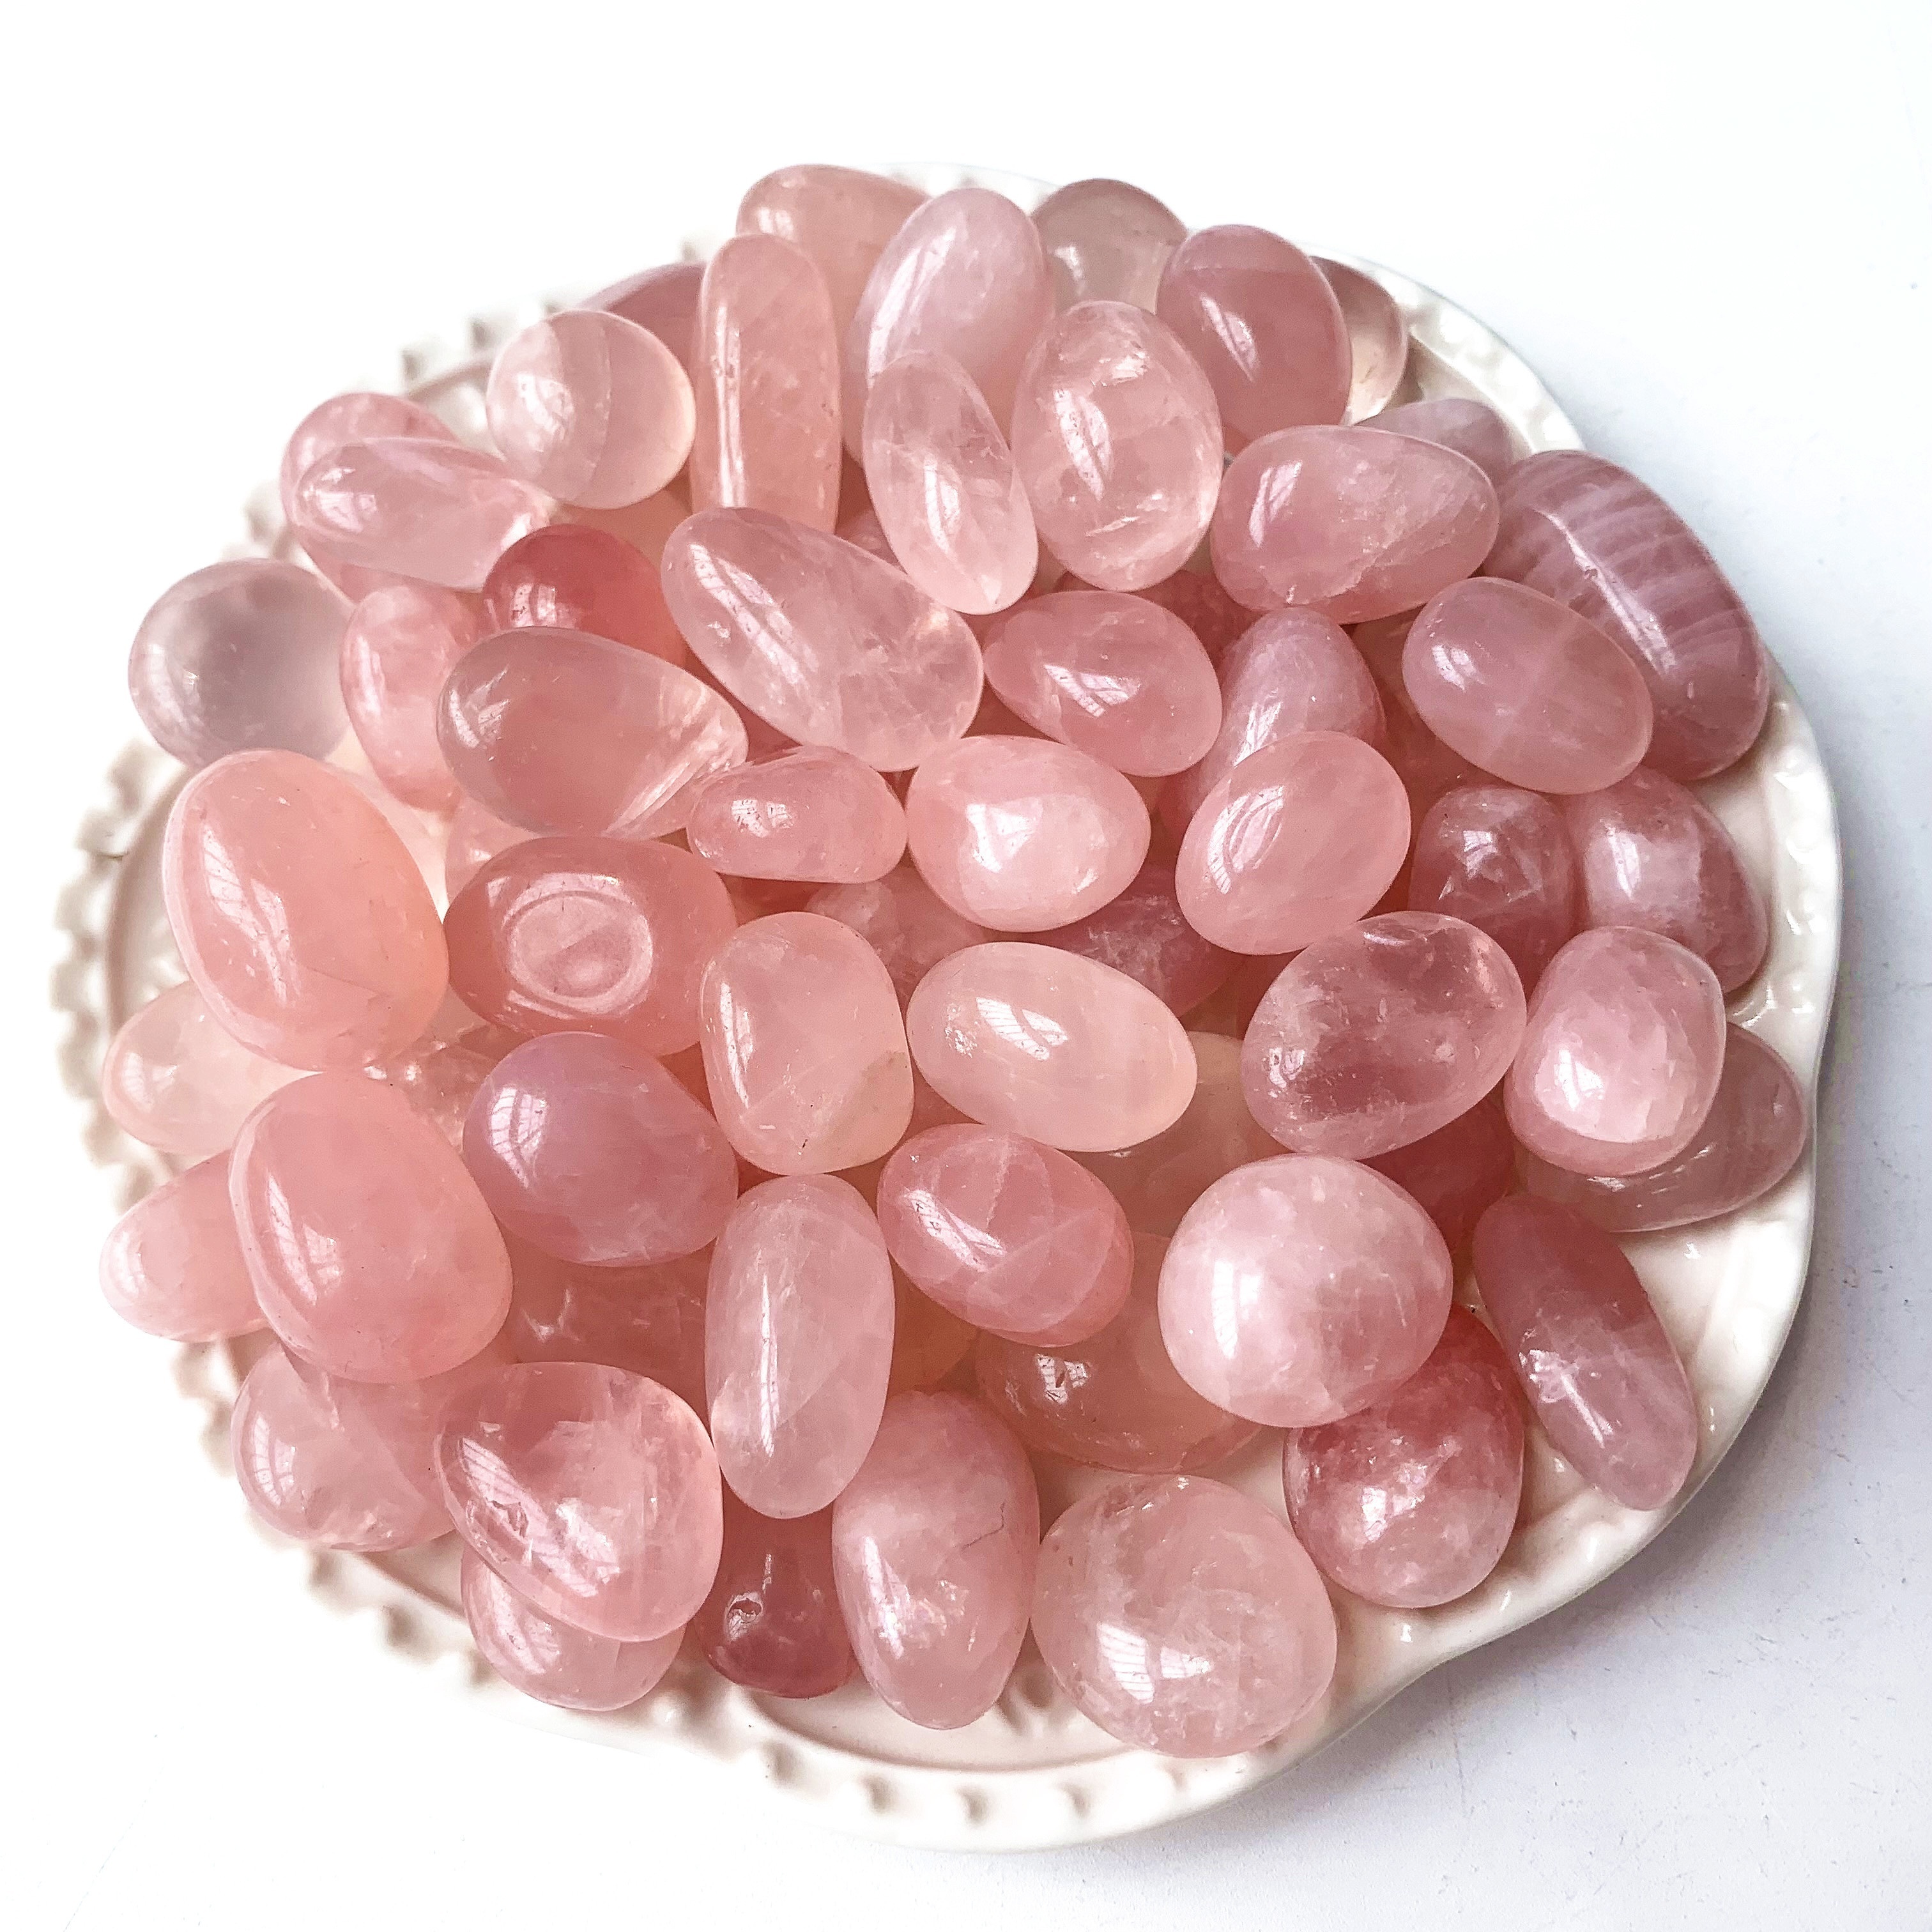 0 5lb 100g Natural Large Size Healing Crystals Chakra Stone Rose